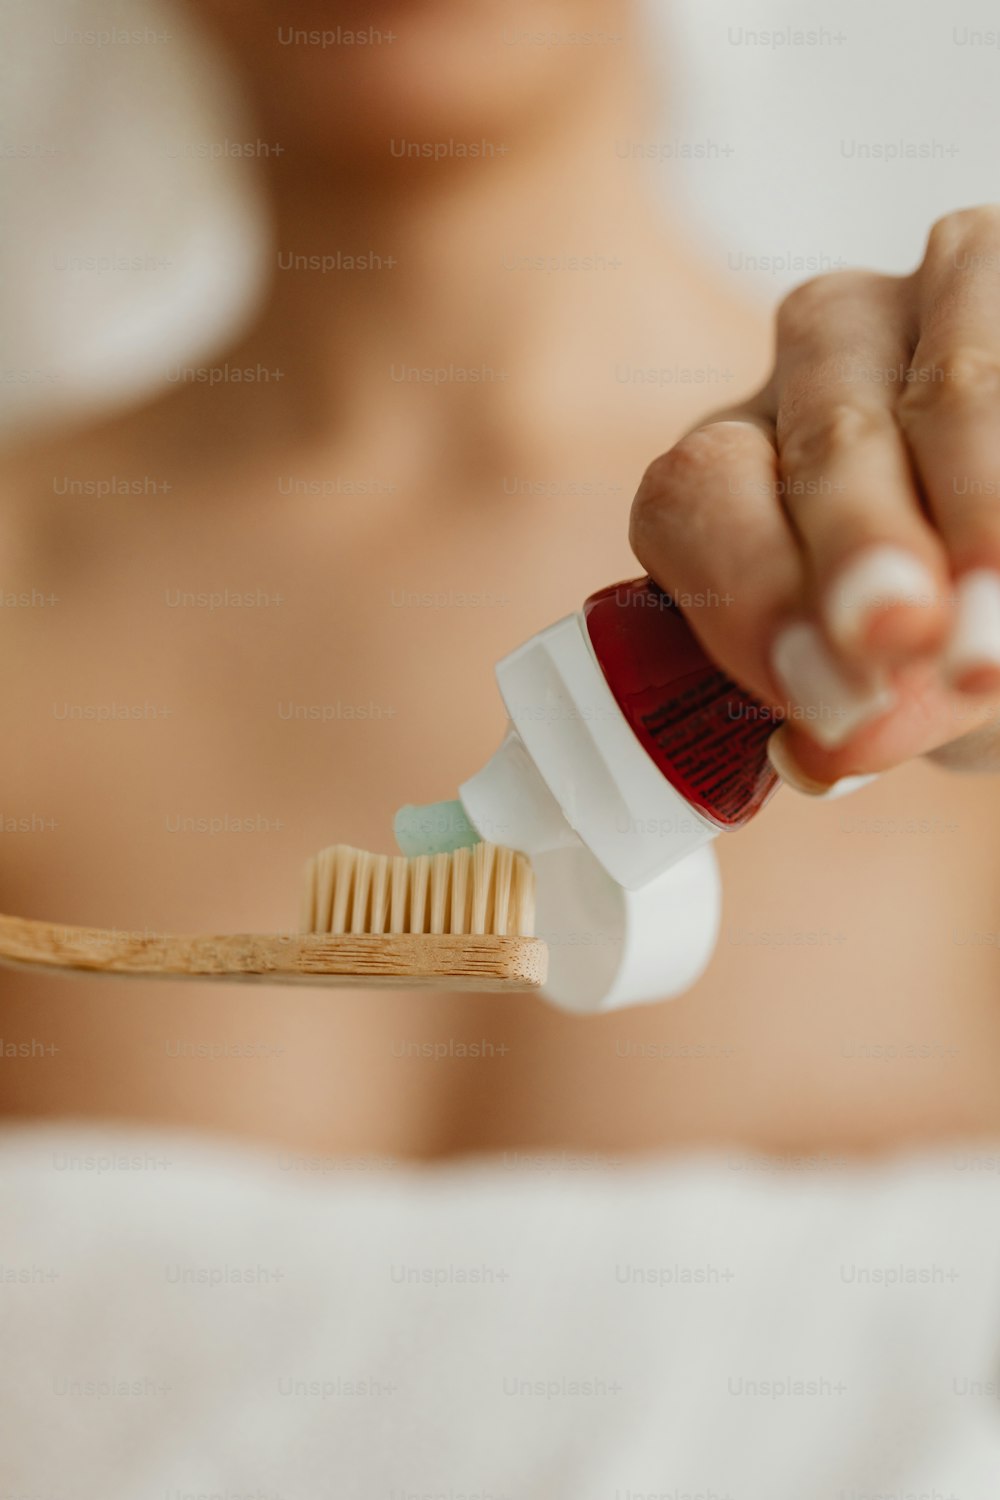 um close up de uma pessoa segurando uma escova de dentes